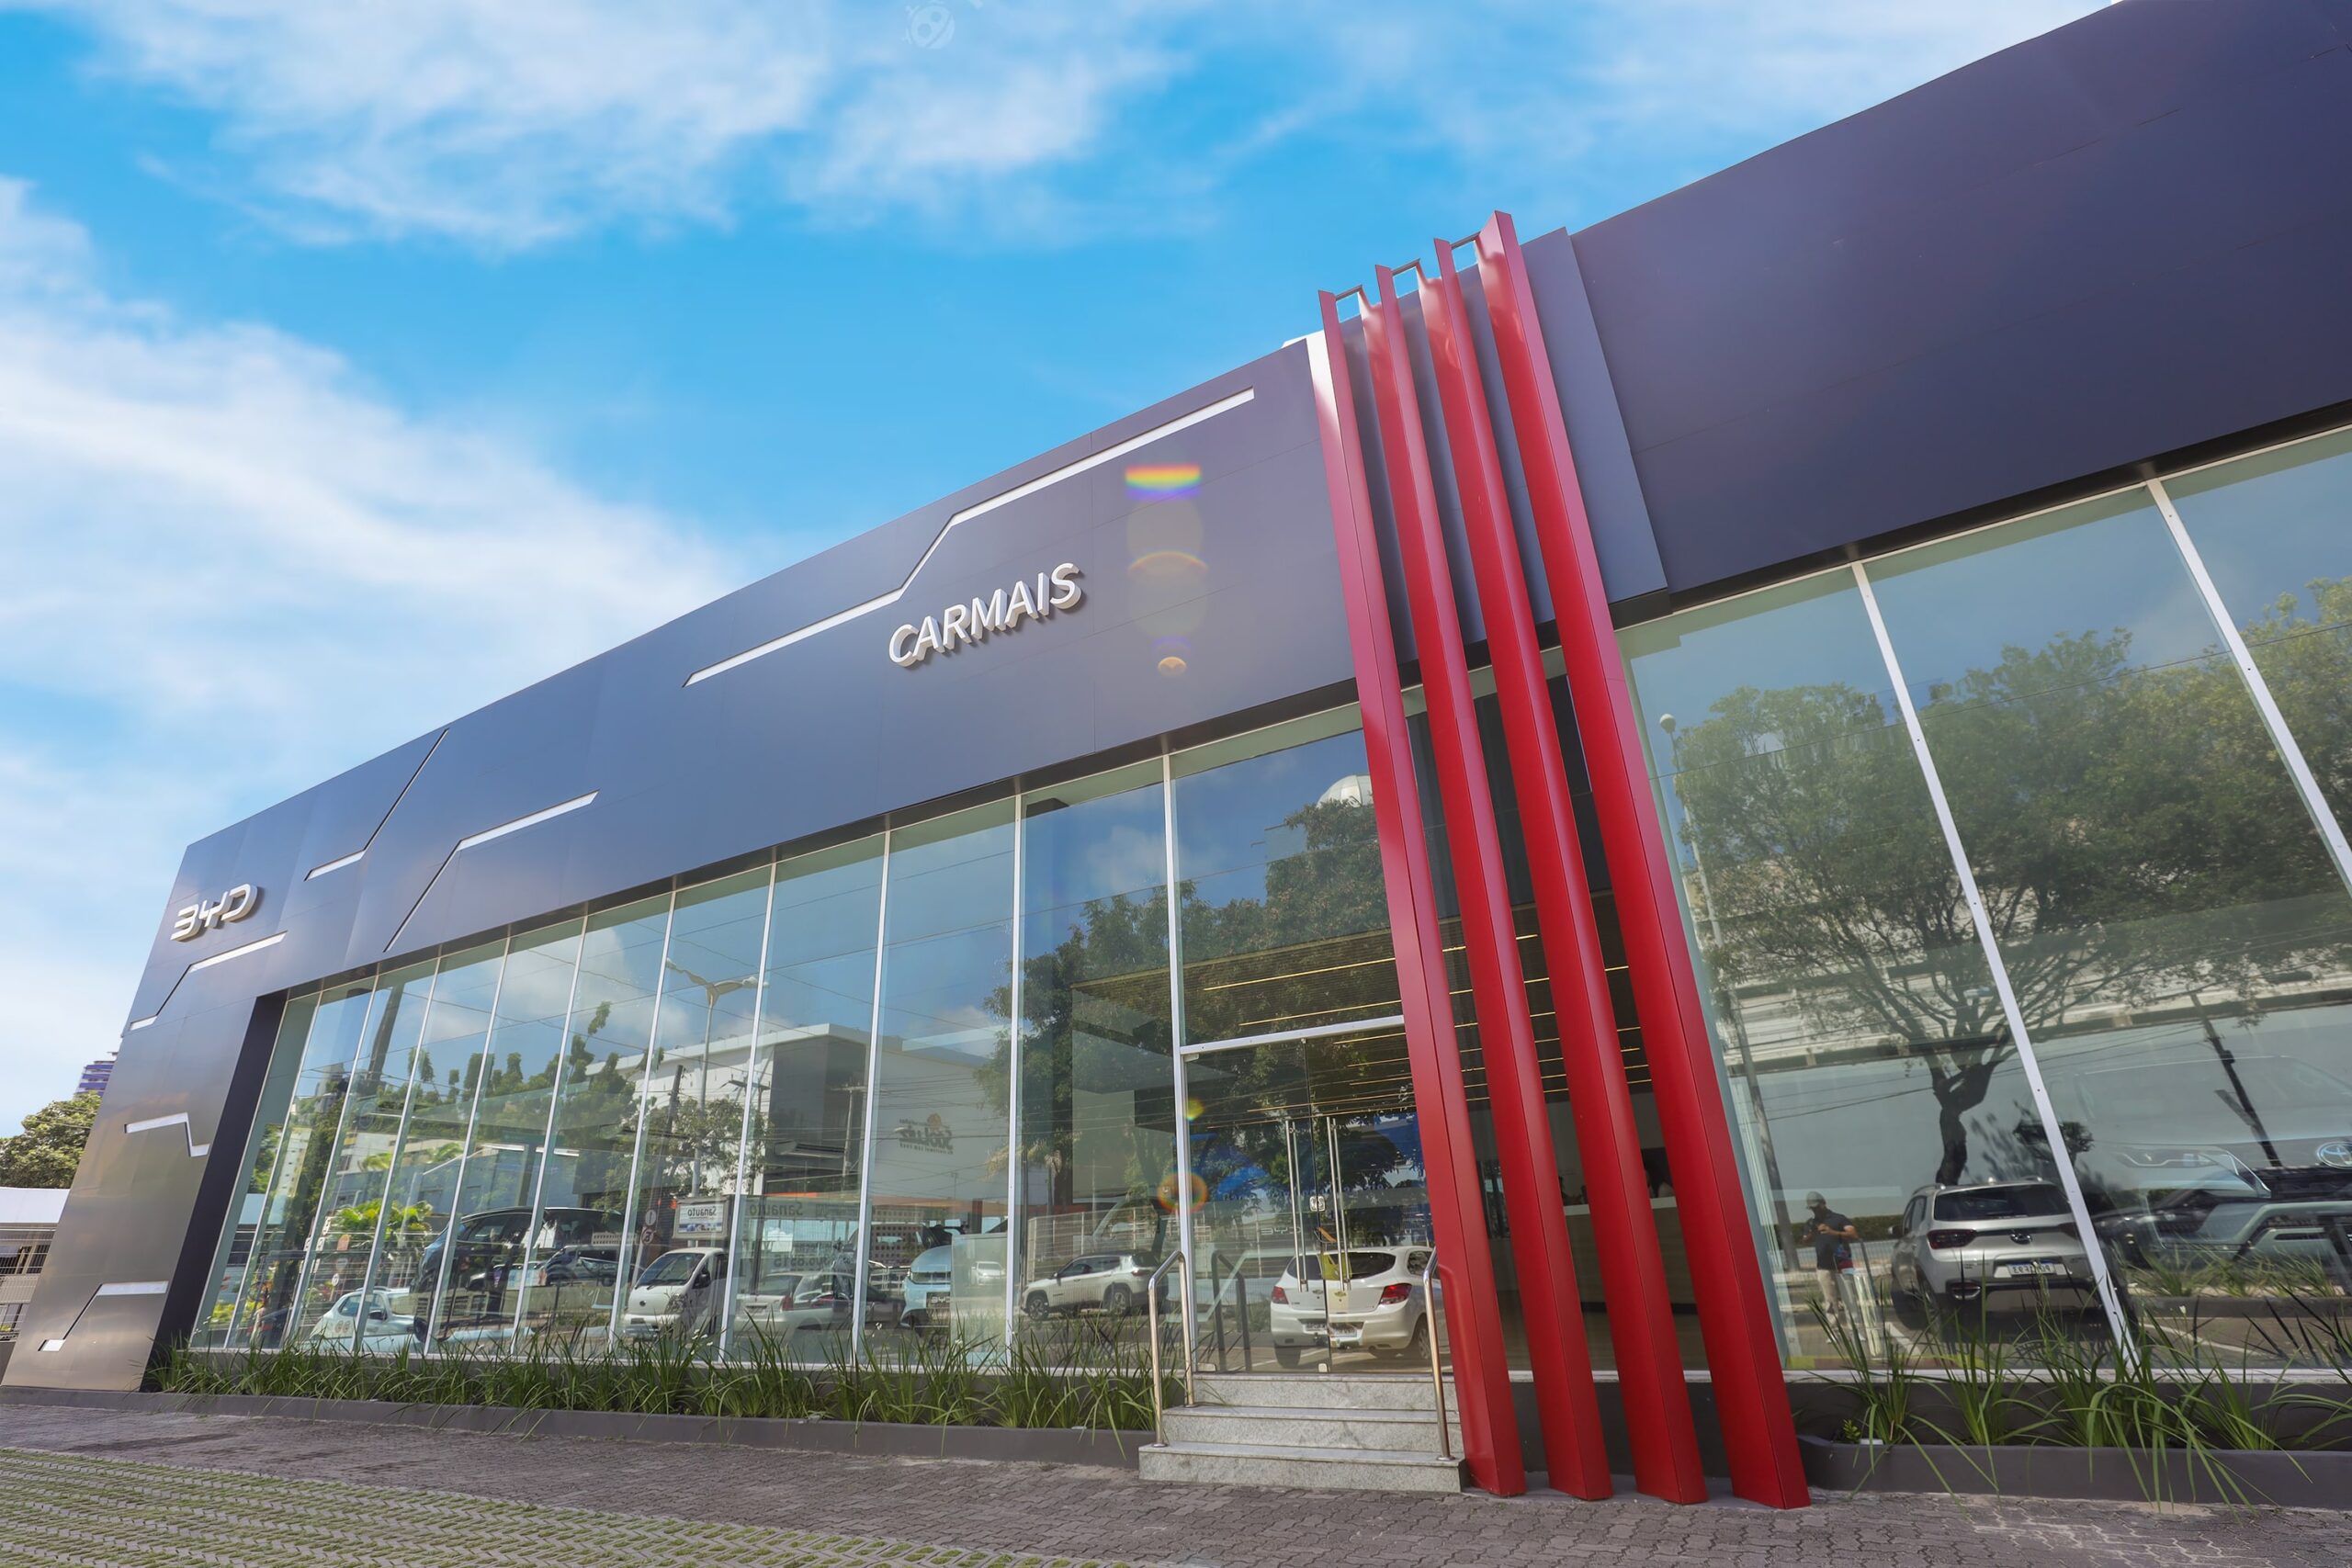 Com mais de 300 mil veículos comercializados, Grupo Carmais chega aos 50 anos na liderança do setor automotivo do Ceará